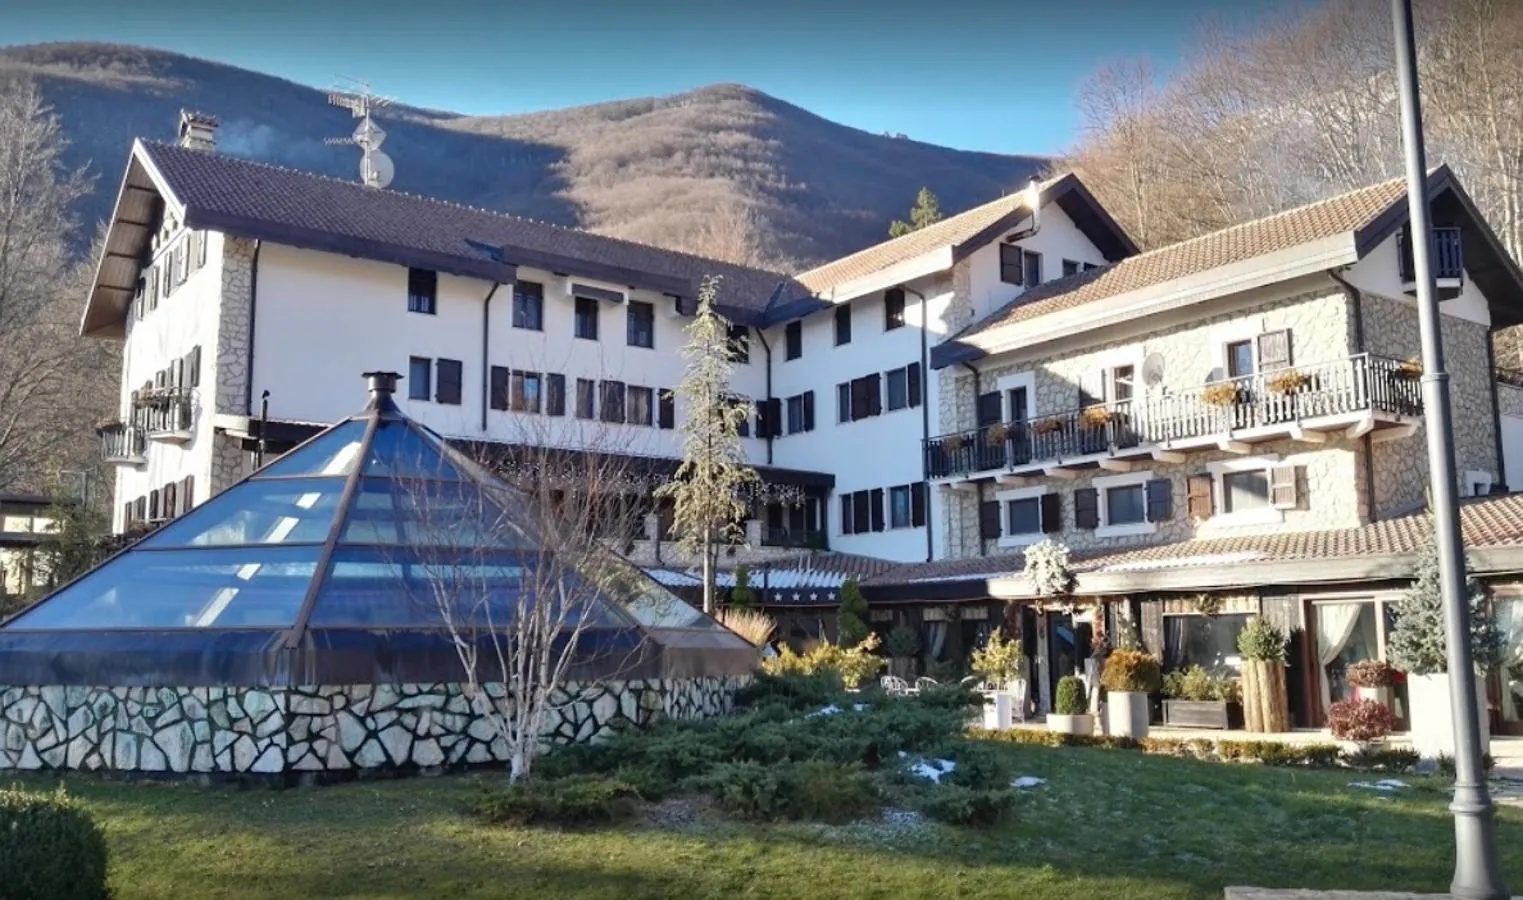 Los huéspedes del hotel sepultado por la nieve pidieron marcharse horas antes de la avalancha